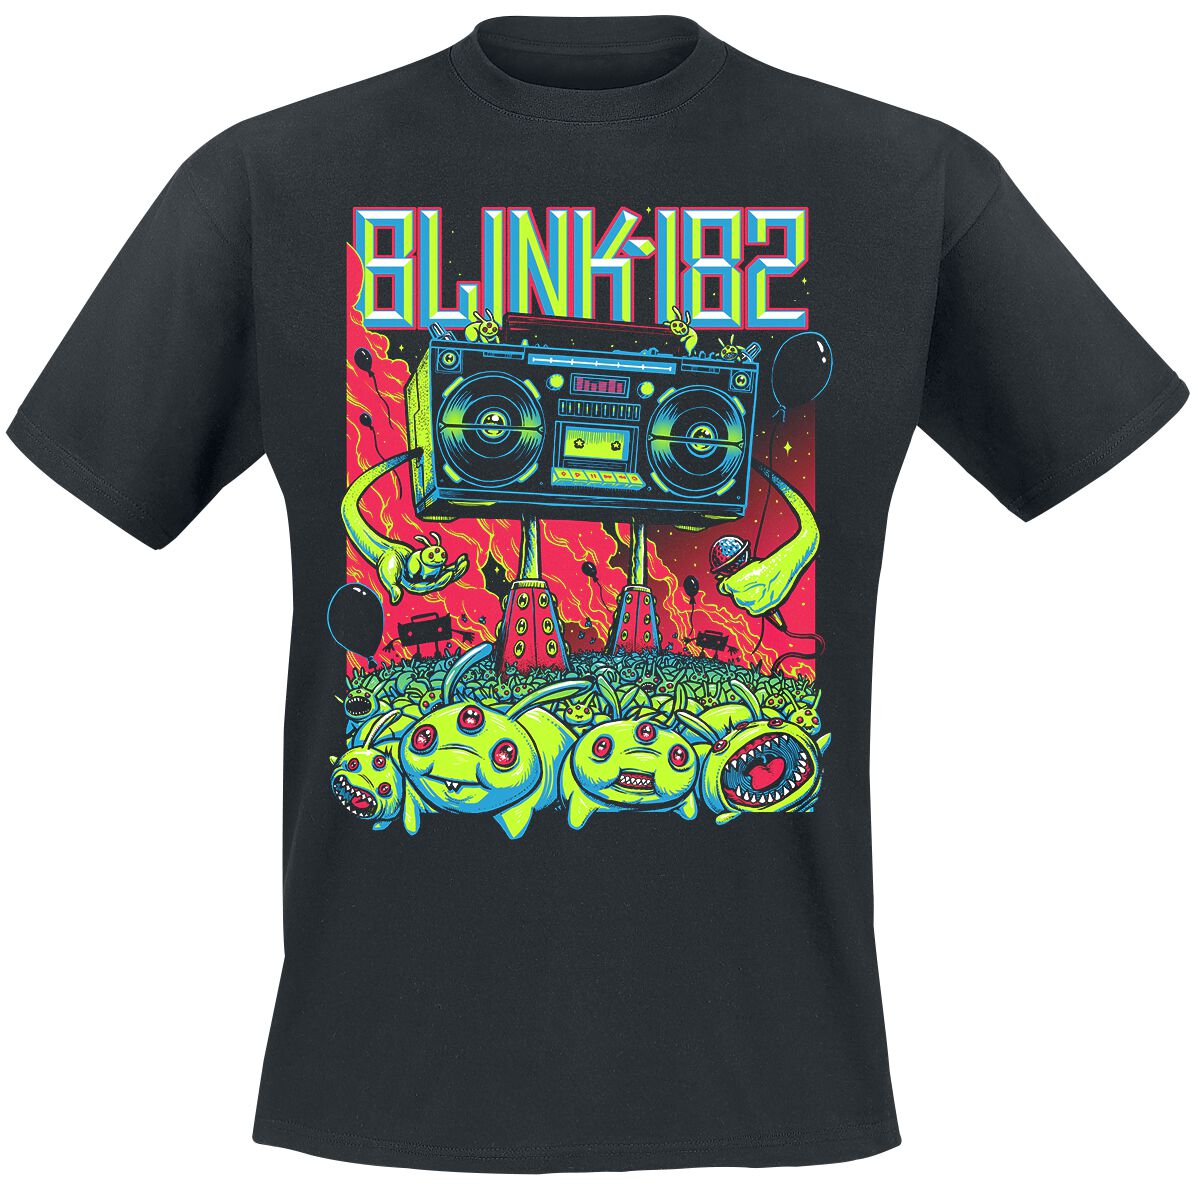 Blink-182 T-Shirt - Superboom - S bis 3XL - für Männer - Größe XXL - schwarz  - Lizenziertes Merchandise!